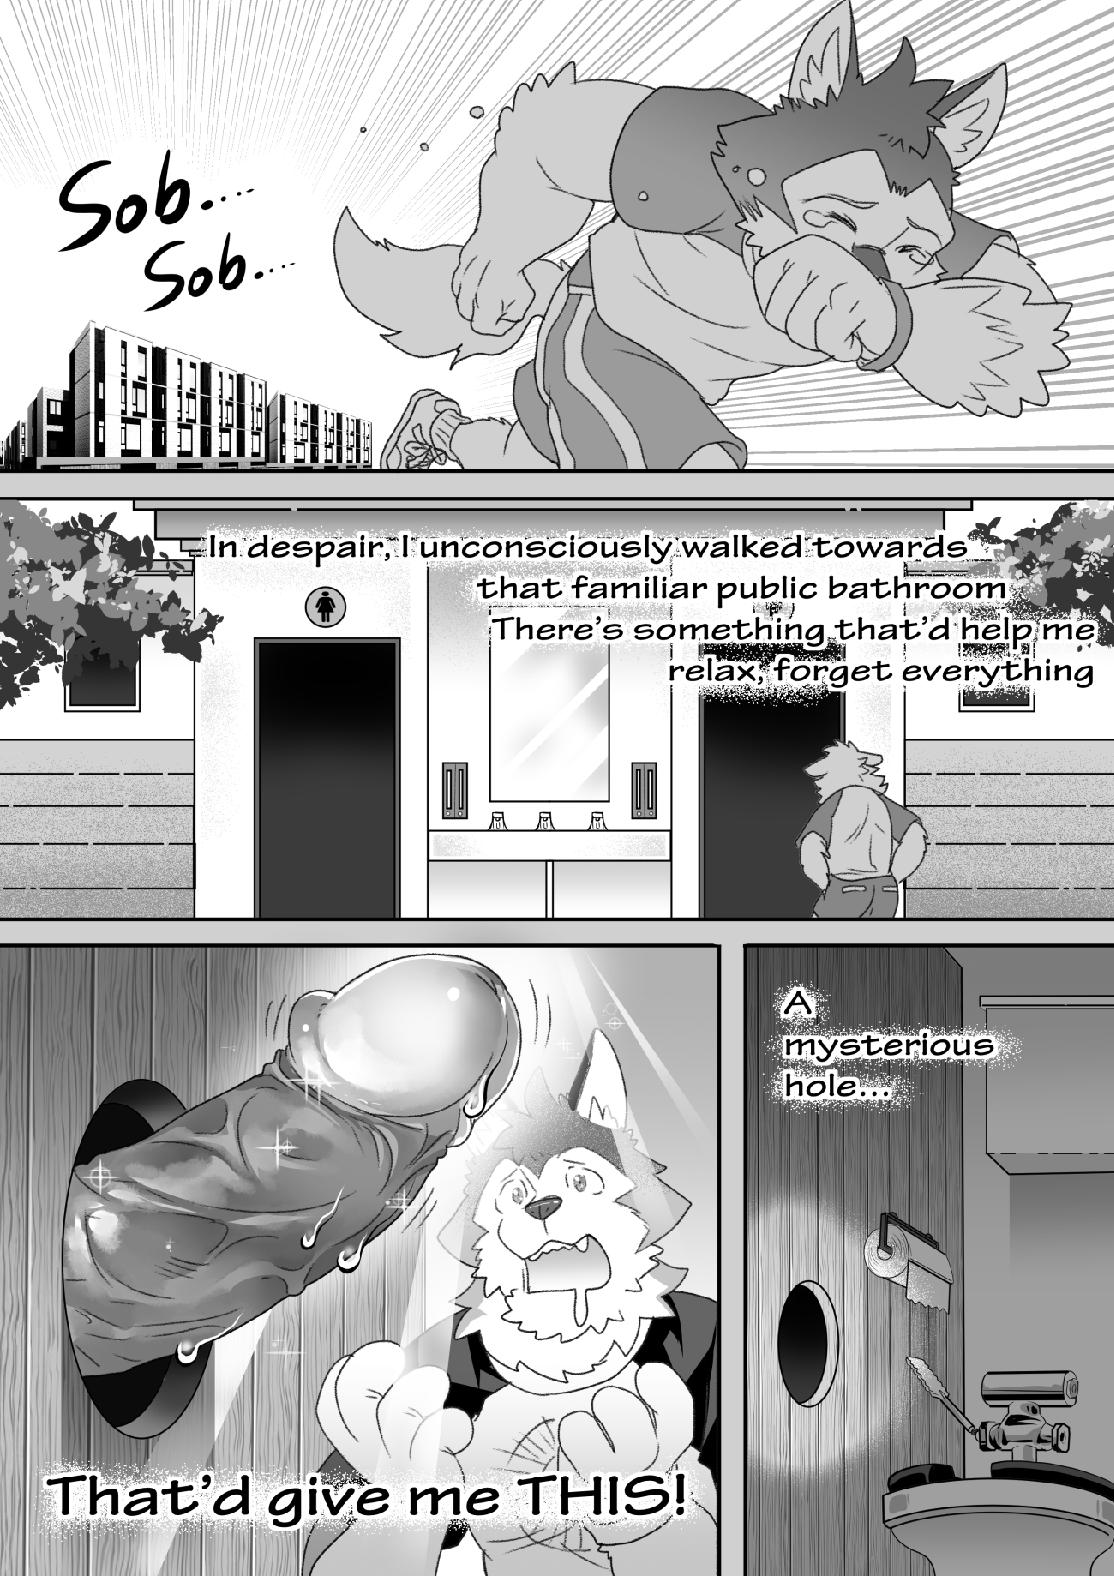 Cartoon Bathroom Glory Hole Porn - Glory Hole - Page 2 - HentaiEra